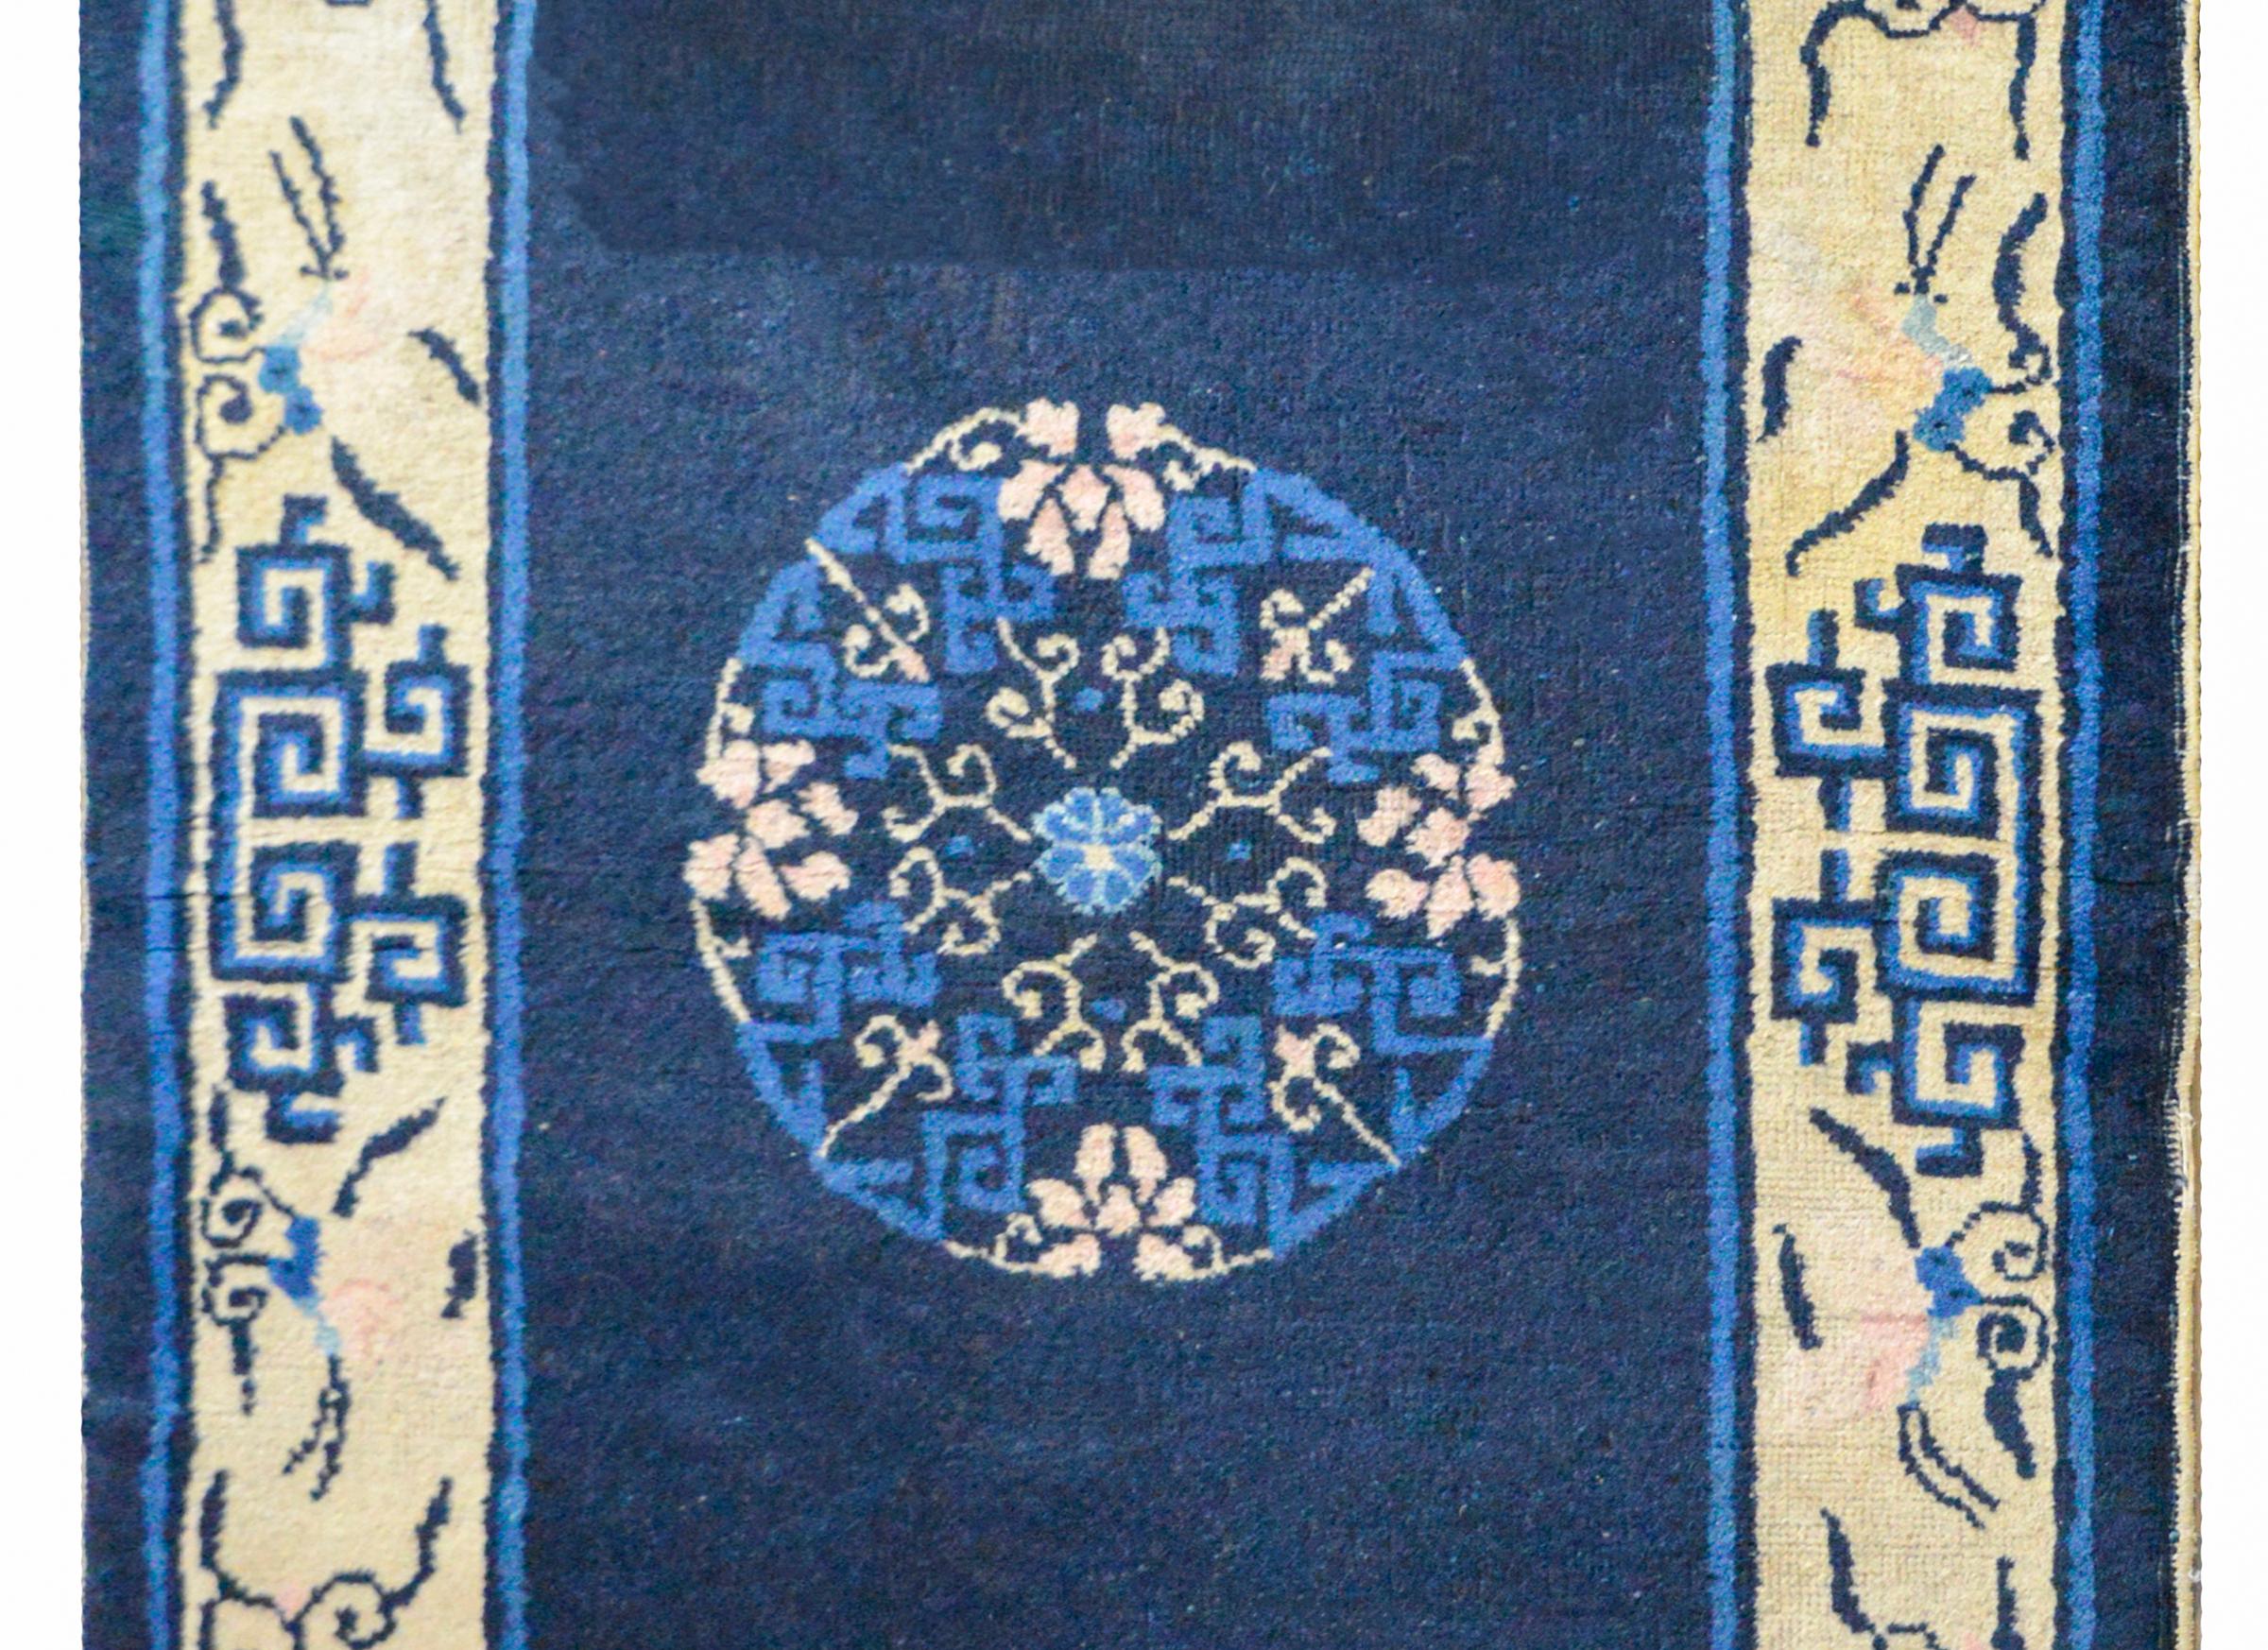 Magnifique tapis chinois de Pékin du 20ème siècle avec un médaillon floral central sur un fond indigo foncé, et entouré d'un large lotus stylisé et d'un motif de vigne défilant. Le champ est abrash, ce qui signifie que la variation des couleurs est